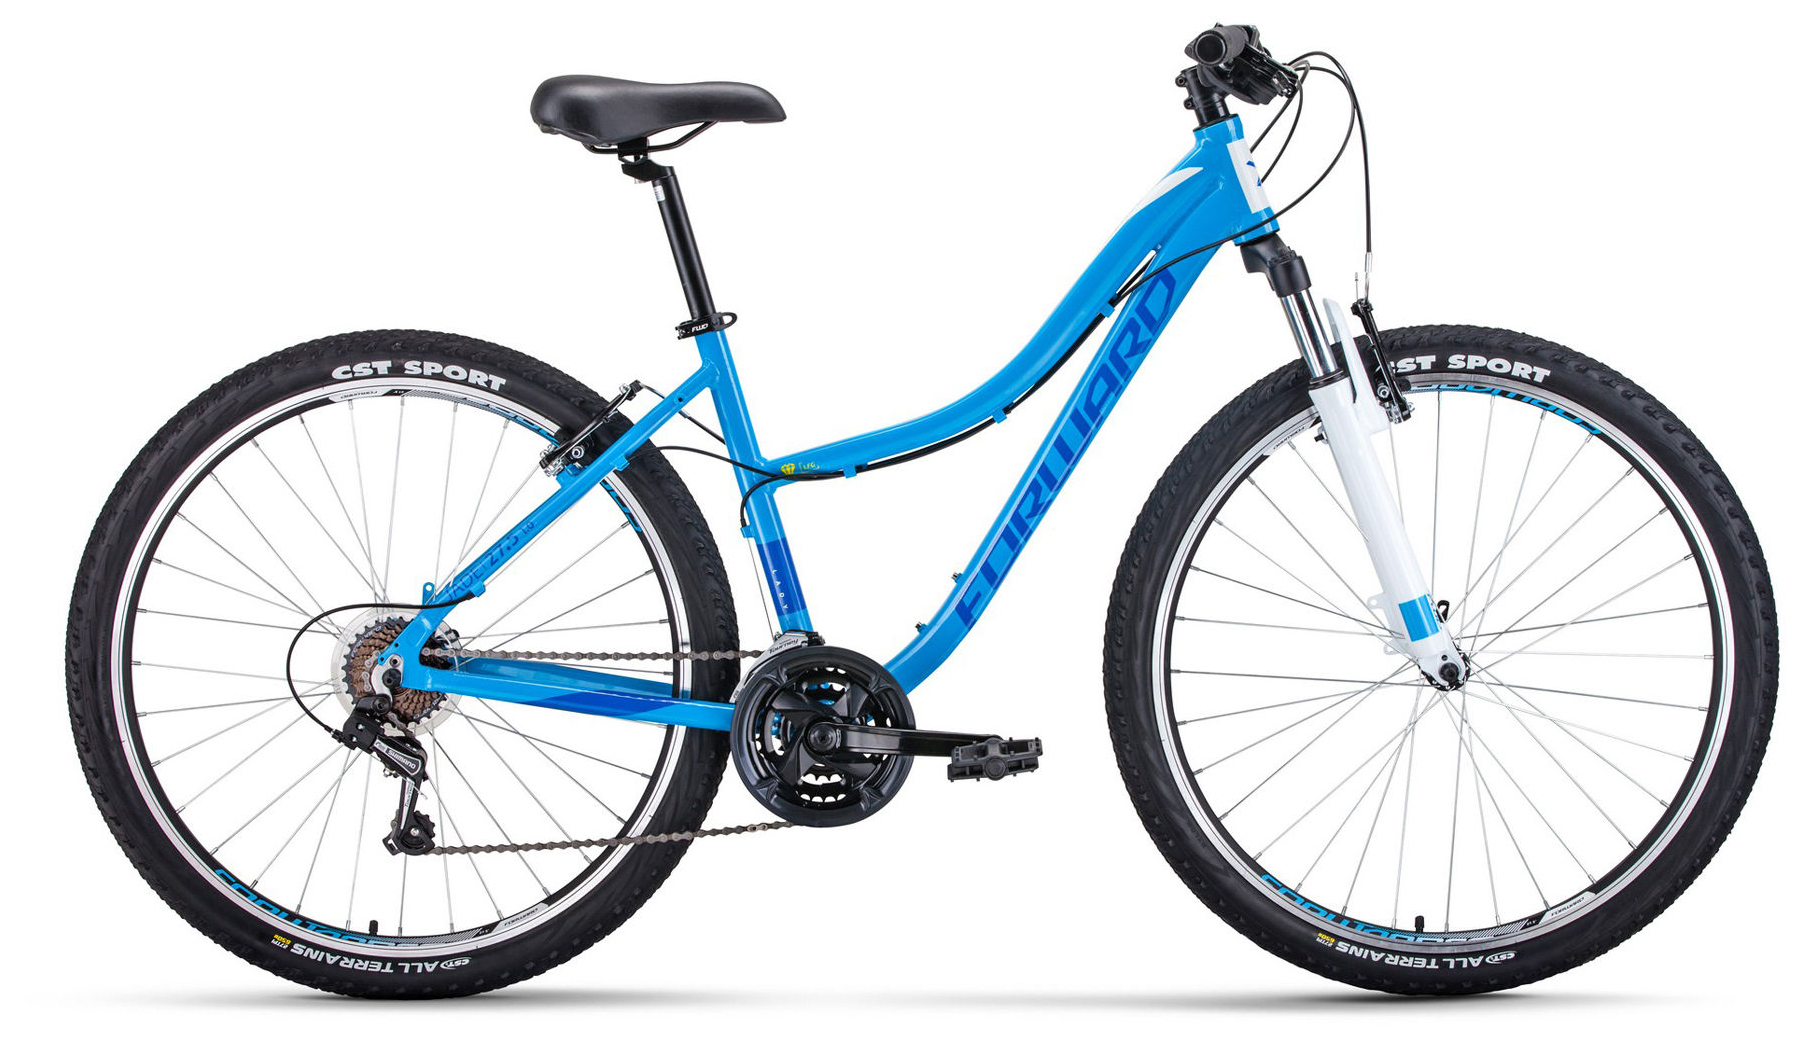  Отзывы о Женском велосипеде Forward Jade 27.5 1.0 2020